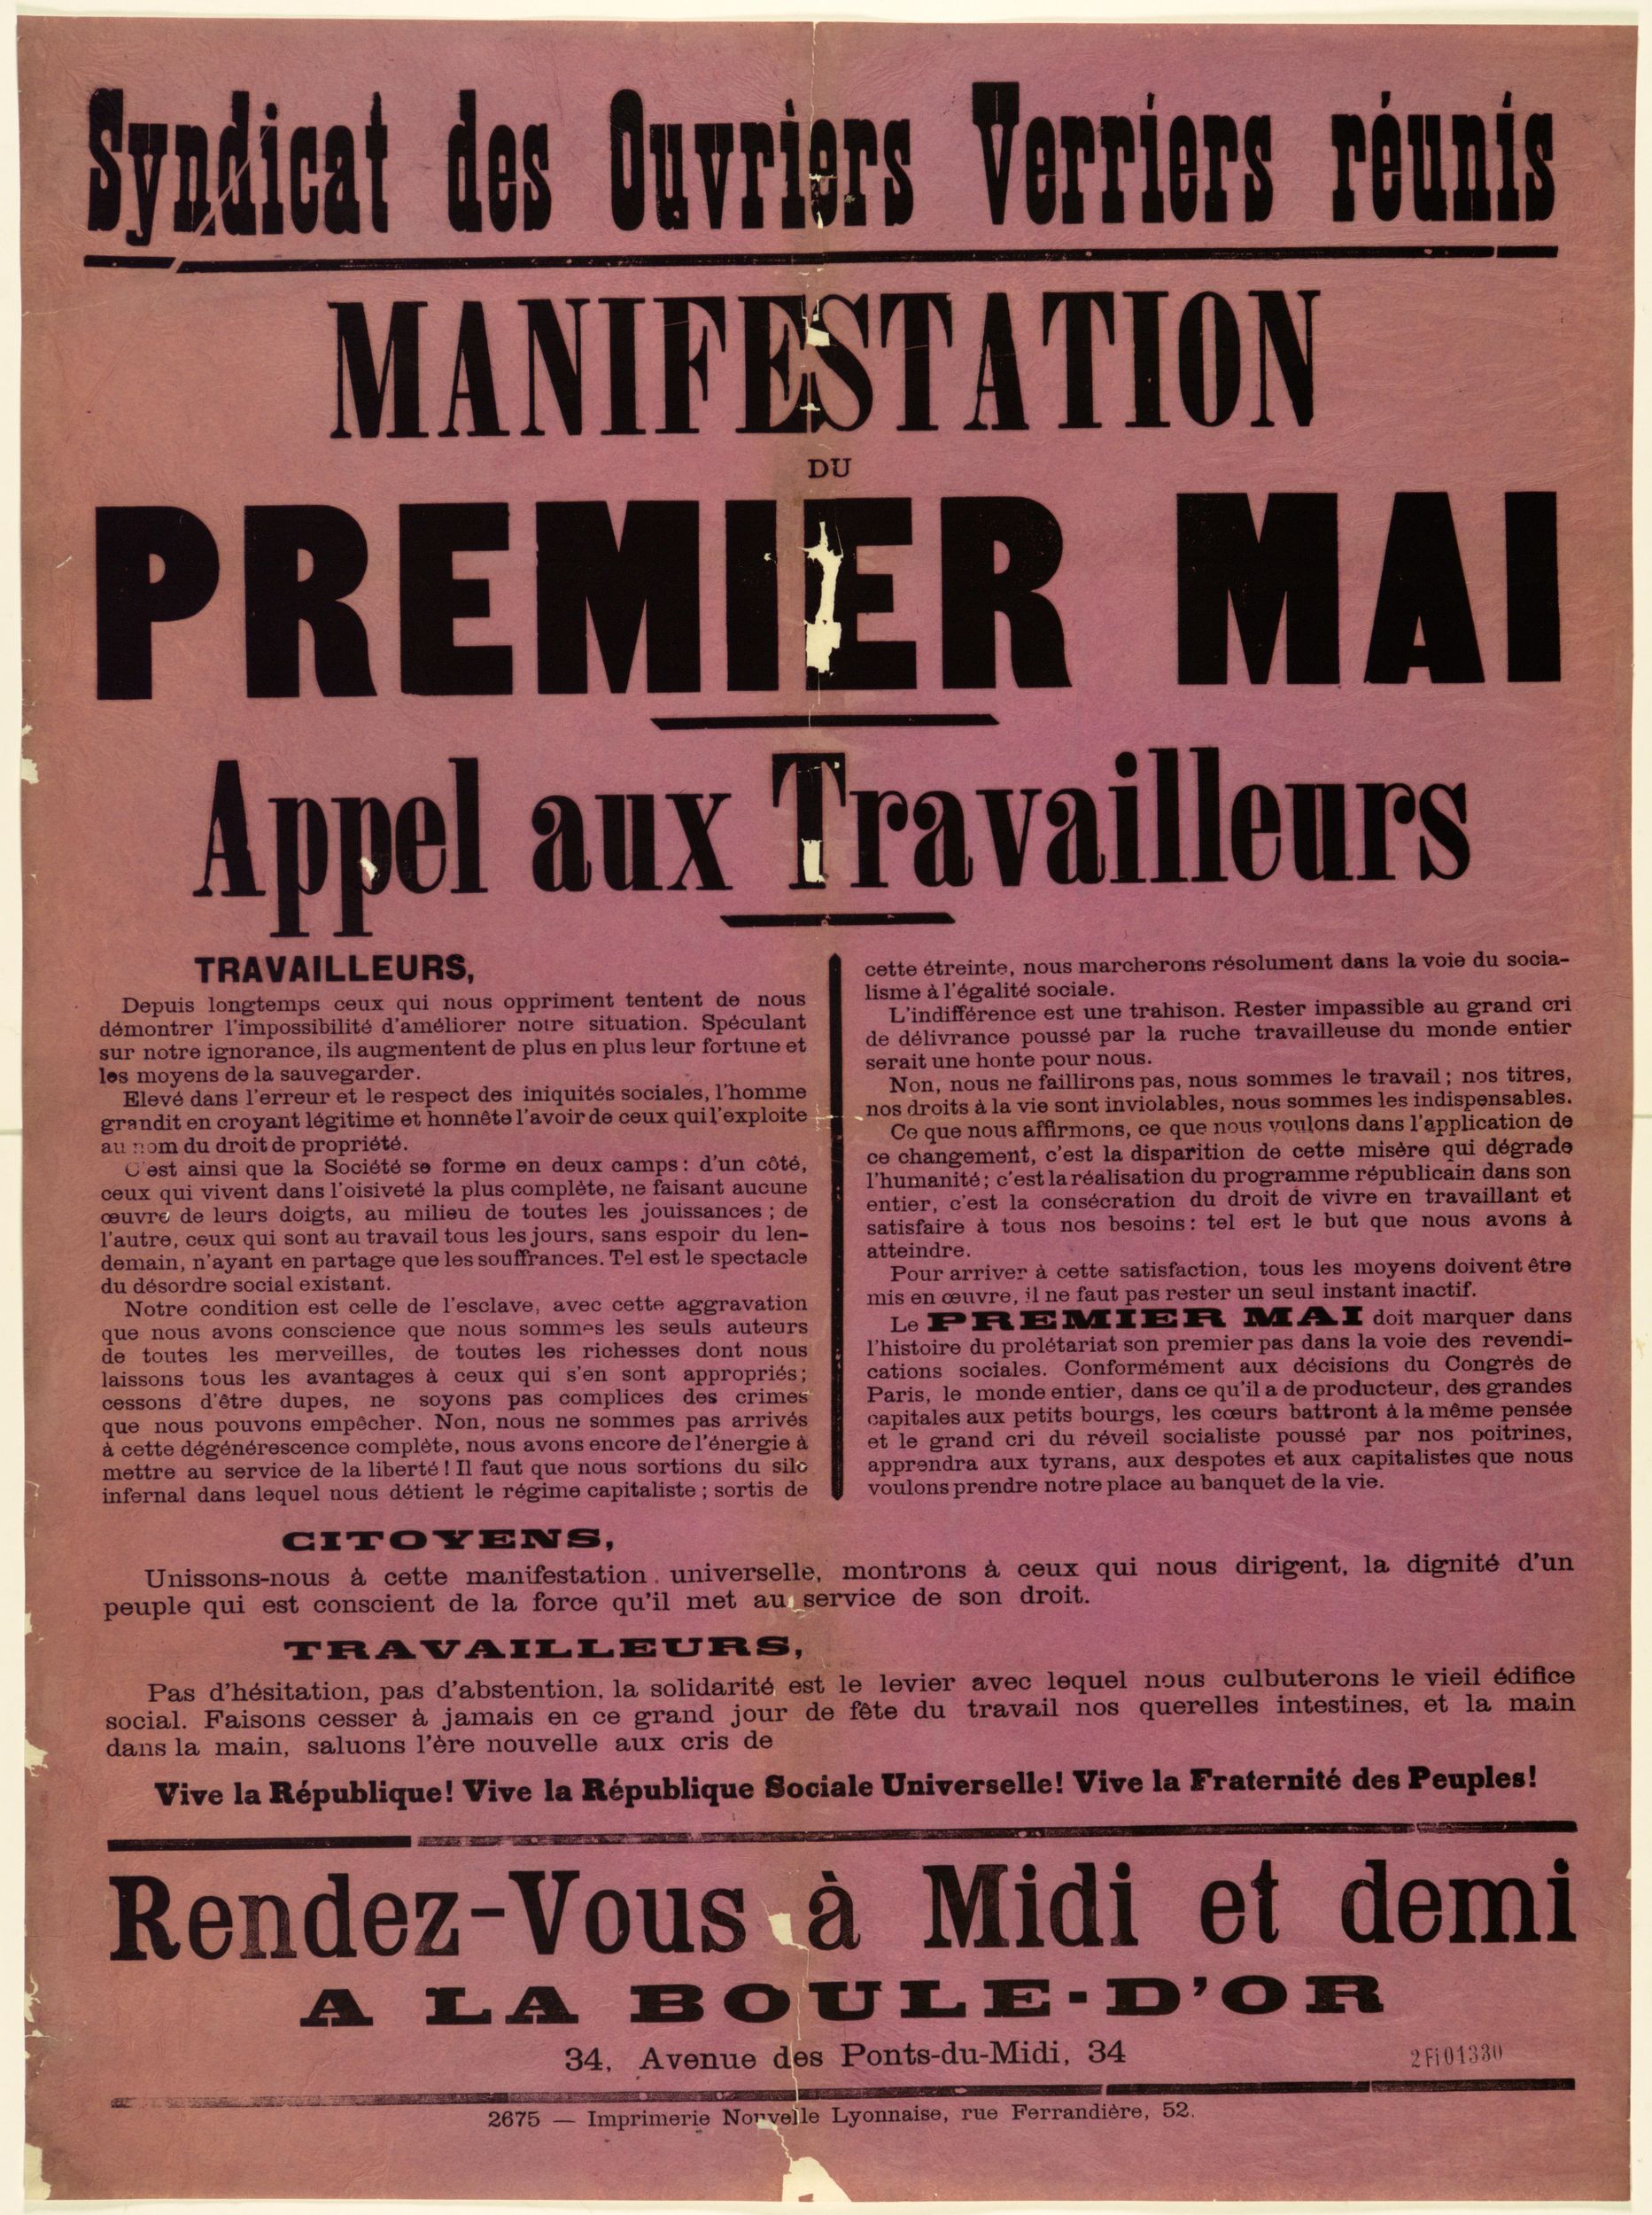 Syndicat des ouvriers verriers réunis - Manifestation du 1er mai, appel aux travailleurs : affiche syndicale (1900, cote : 2FI/1330)